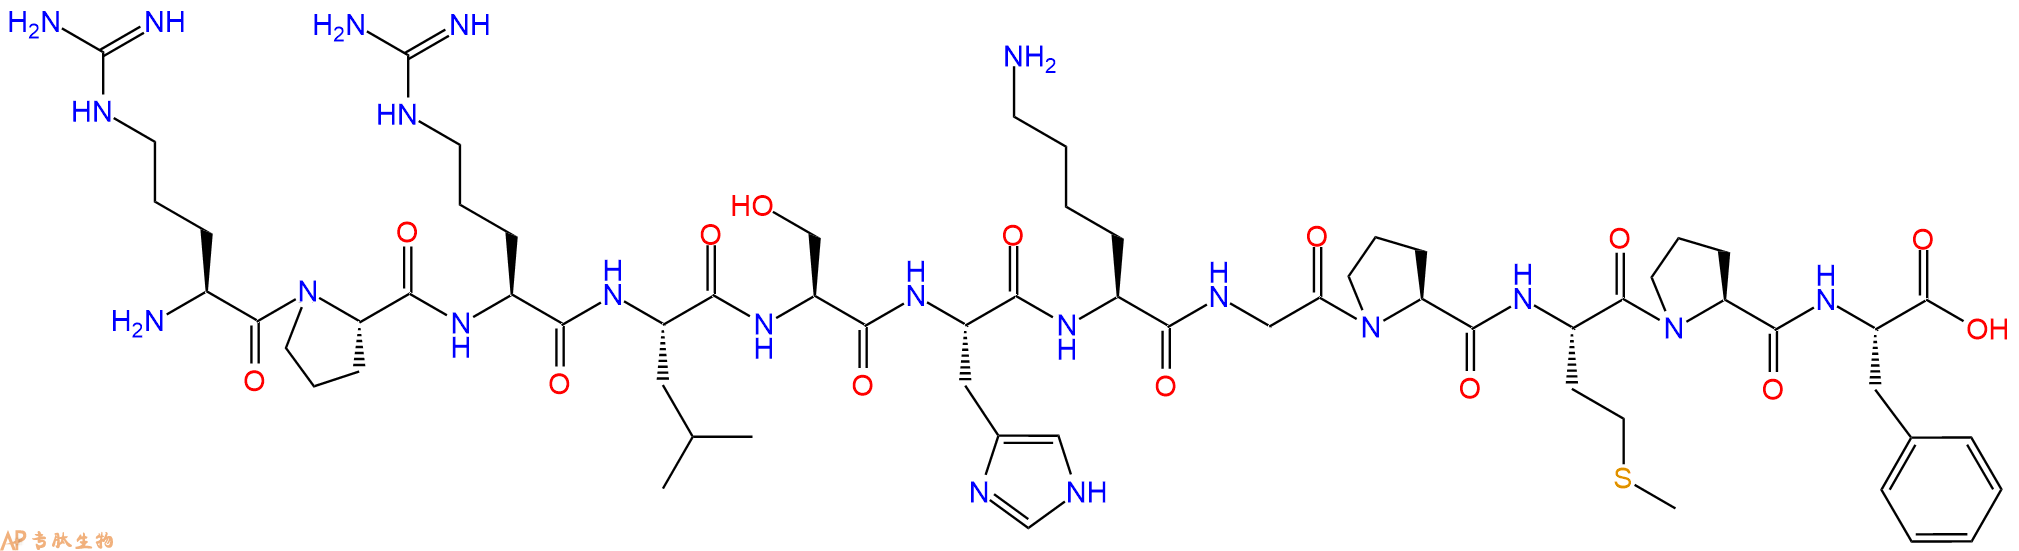 专肽生物产品爱帕琳肽(阿佩林肽)Apelin-12 (human, bovine, mouse, rat)229961-08-4